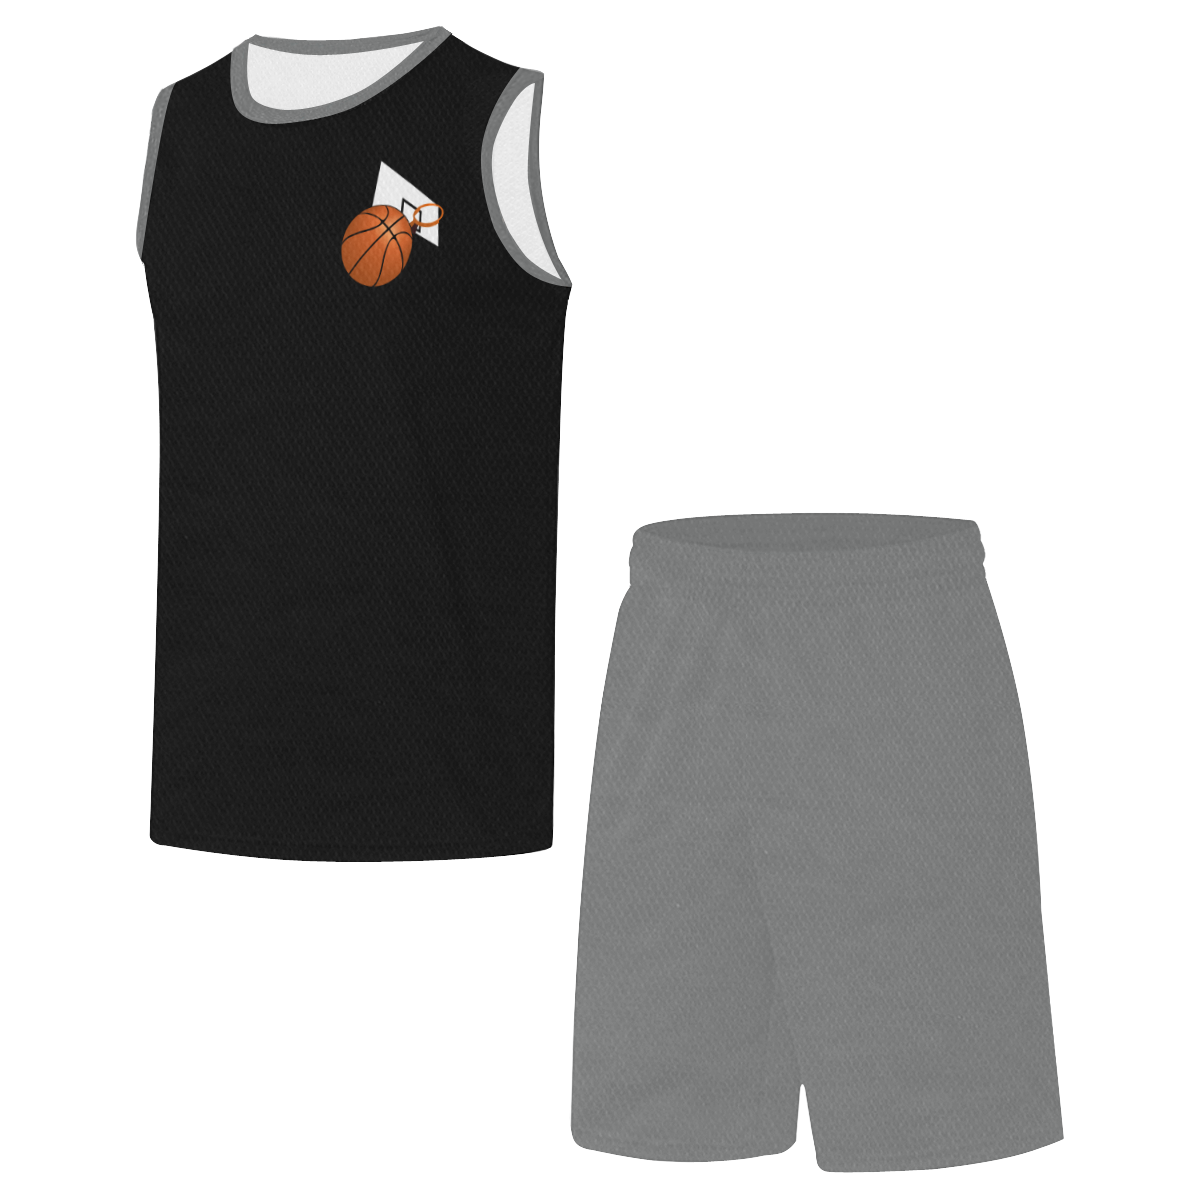 Basketball And Basketball Hoop Black and Gray All Over Print Basketball Uniform